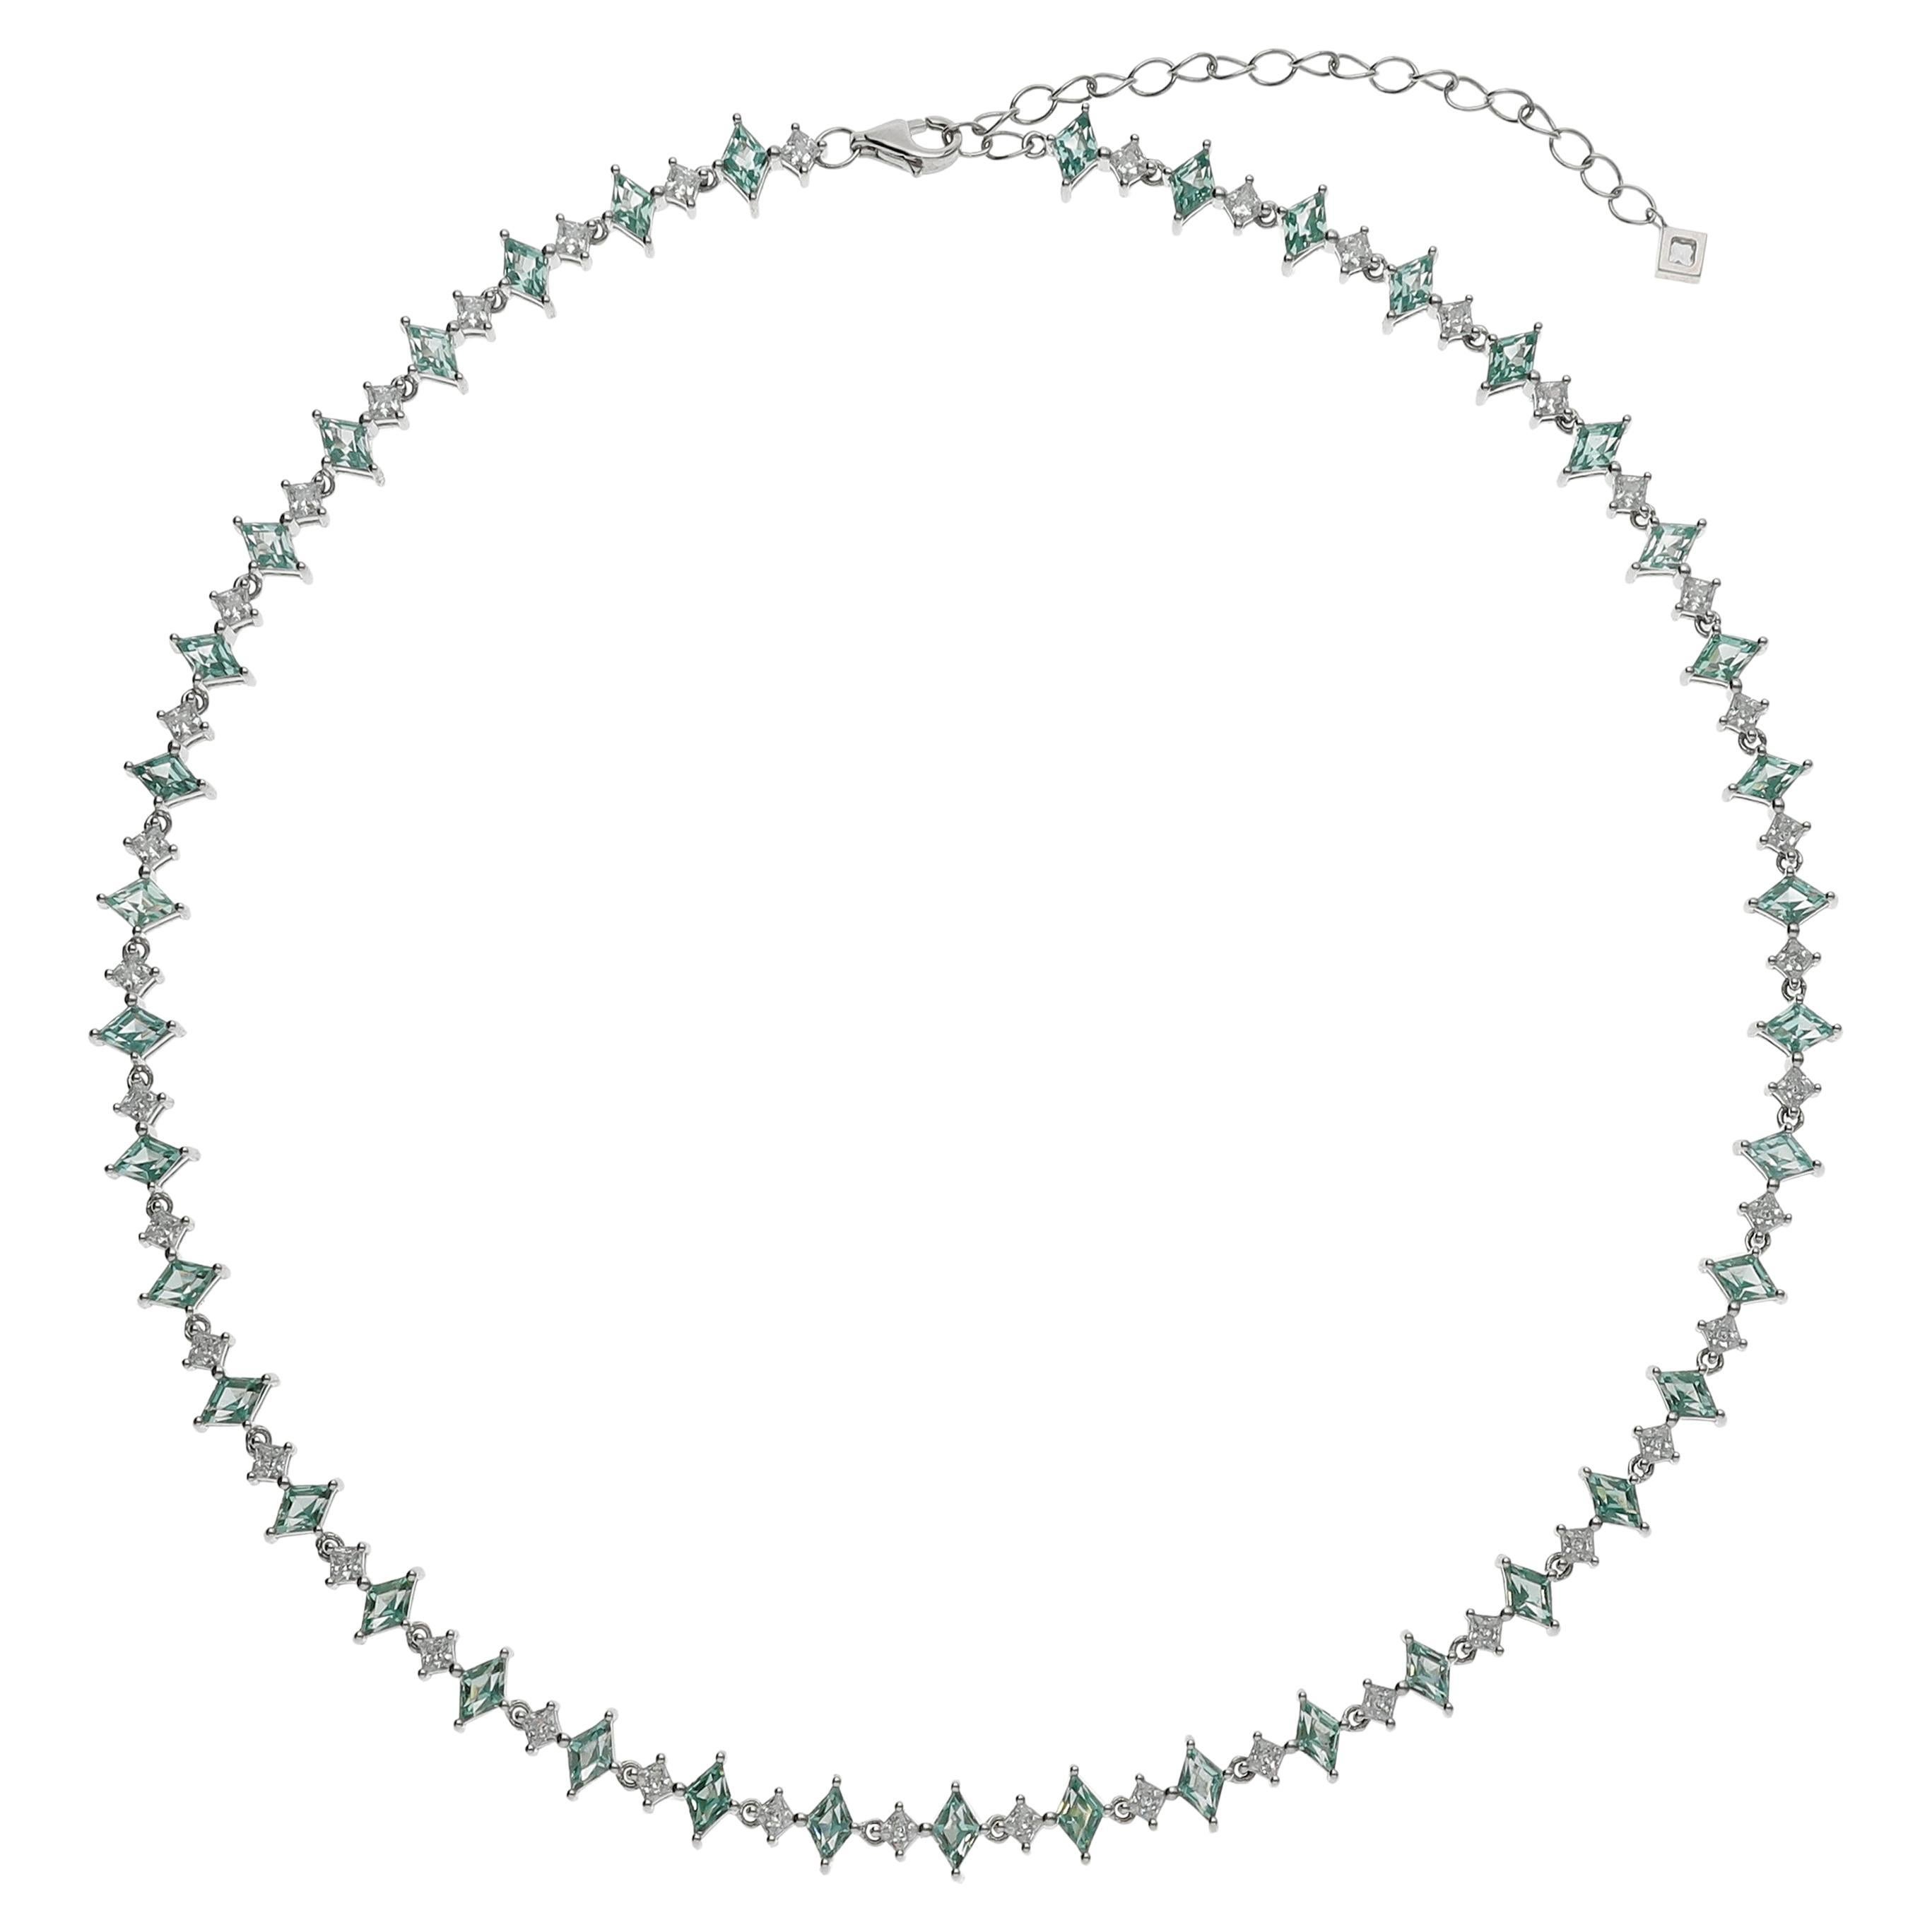  Saphir-Harlekin-Halskette, mintgrüner und weißer Saphir, Silber